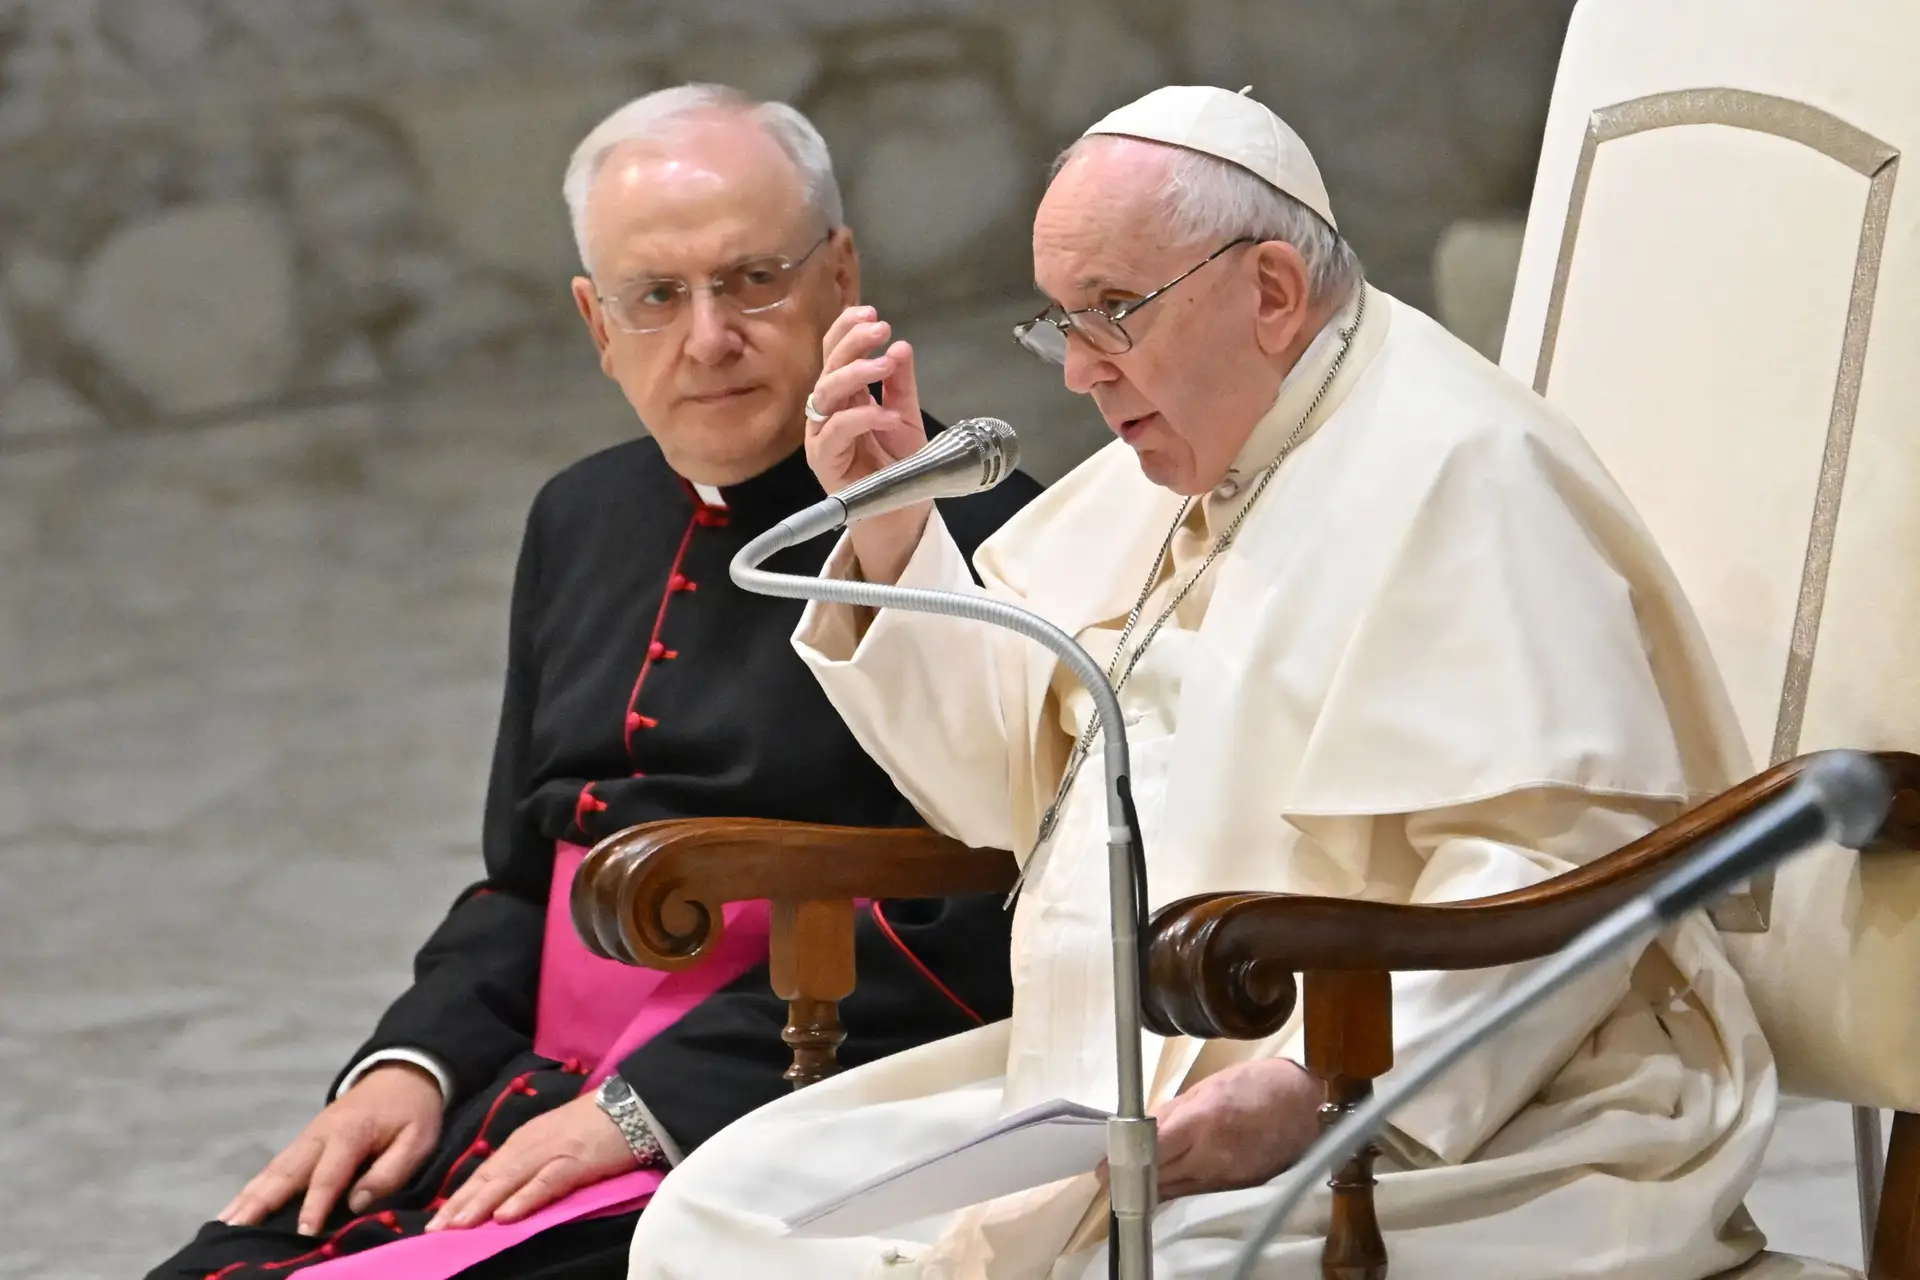 Riscos de uma guerra nuclear “são cada vez maiores”, alerta Papa Francisco